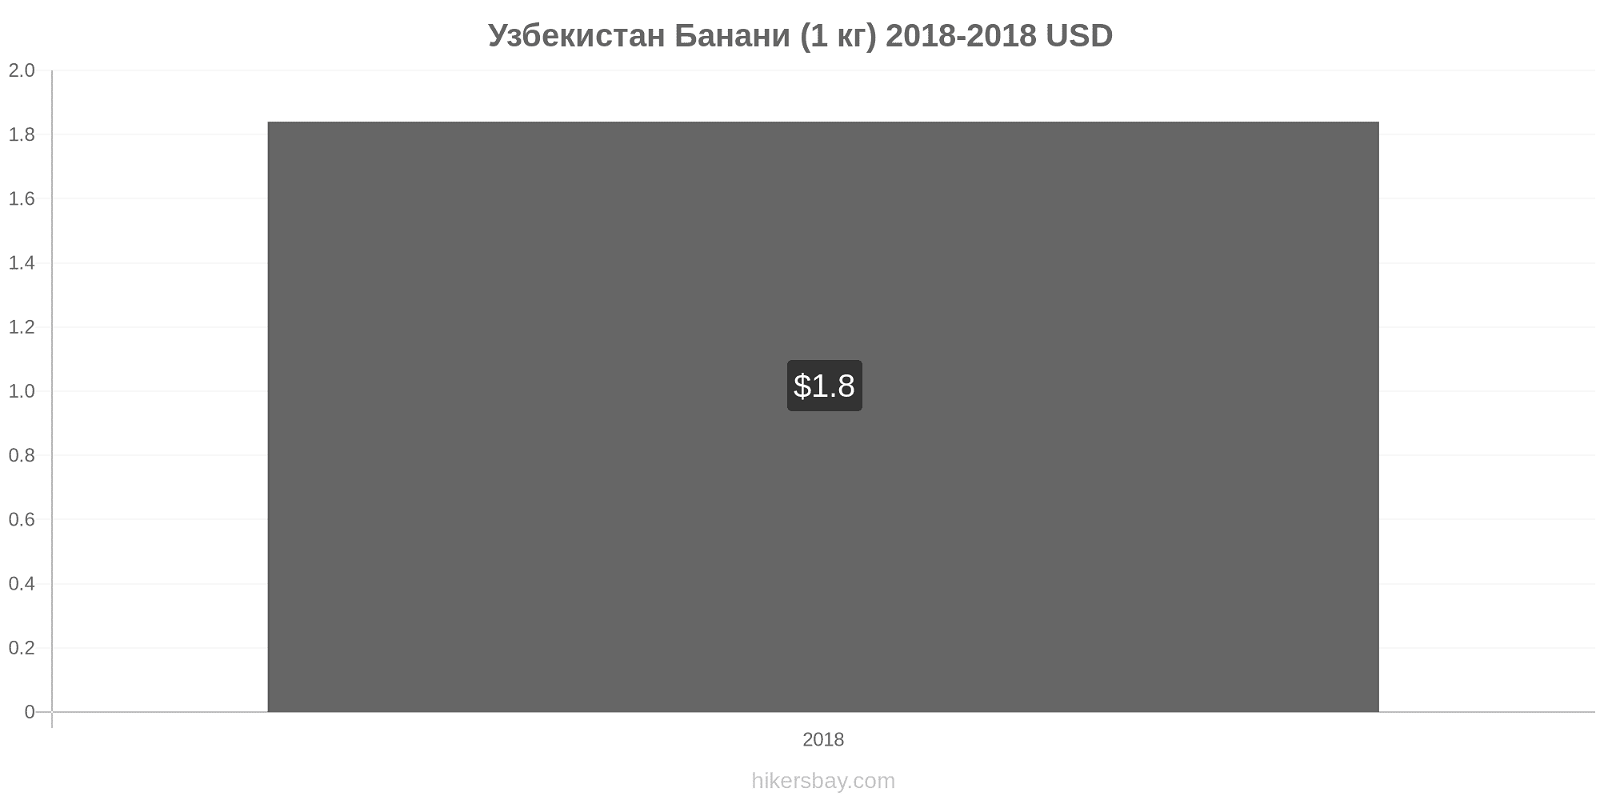 Узбекистан зміни цін Банани (1 кг) hikersbay.com